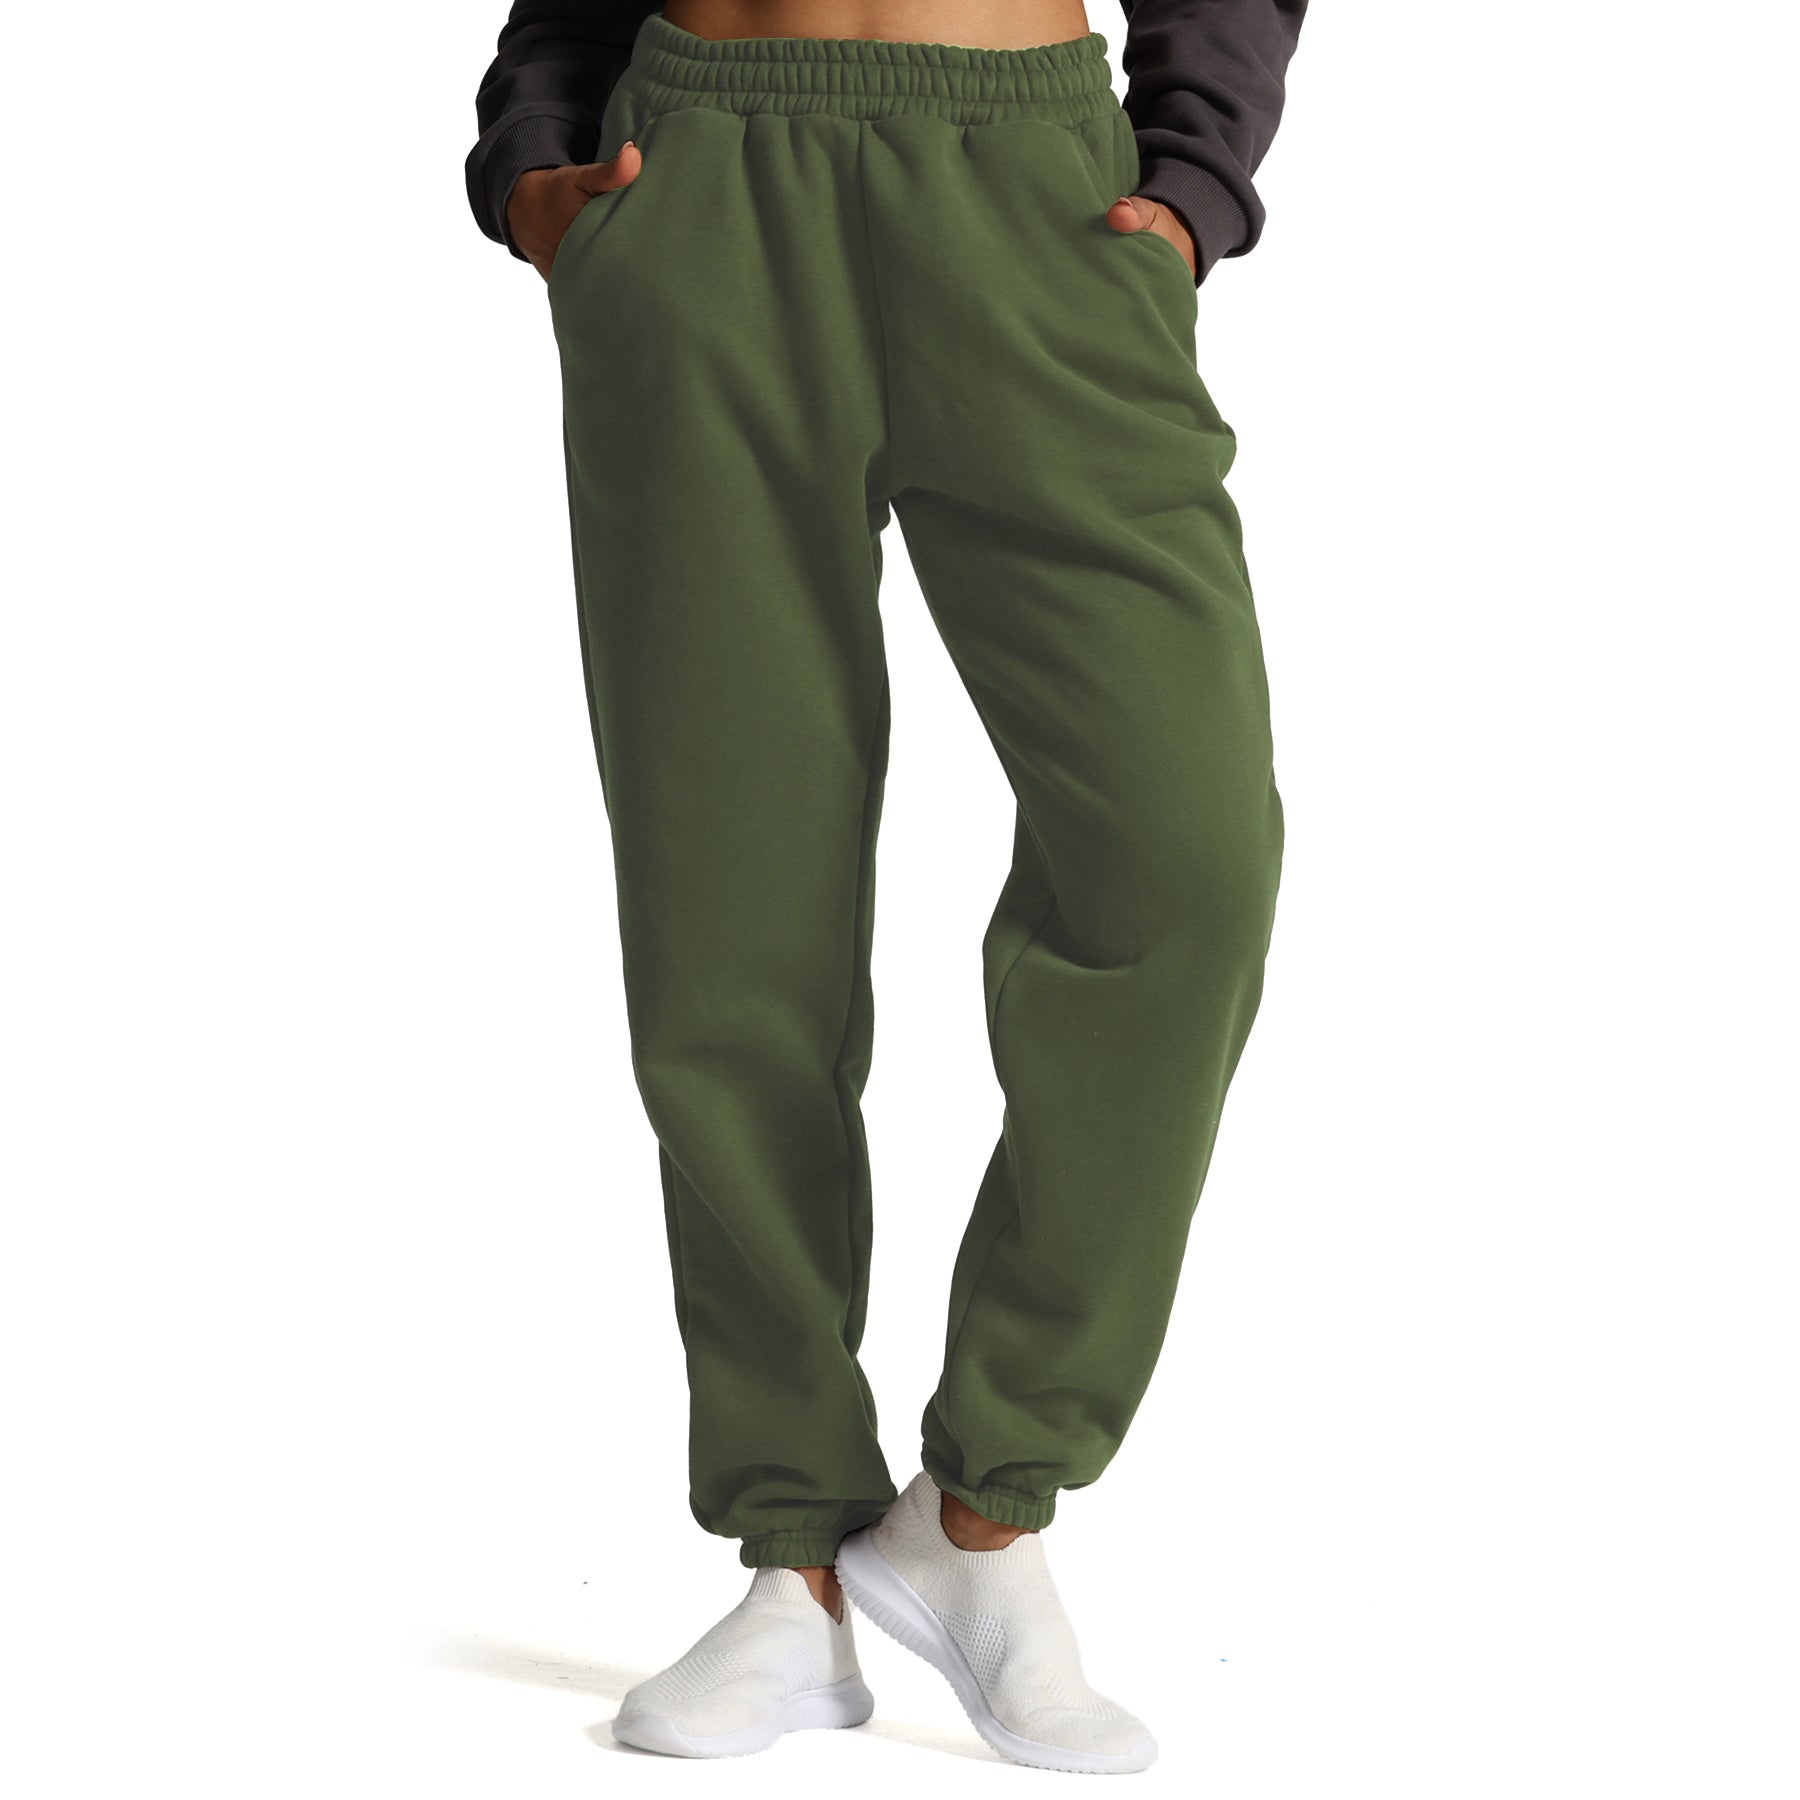 Aoxjox Fleece Lined Oversized Sweat Pants